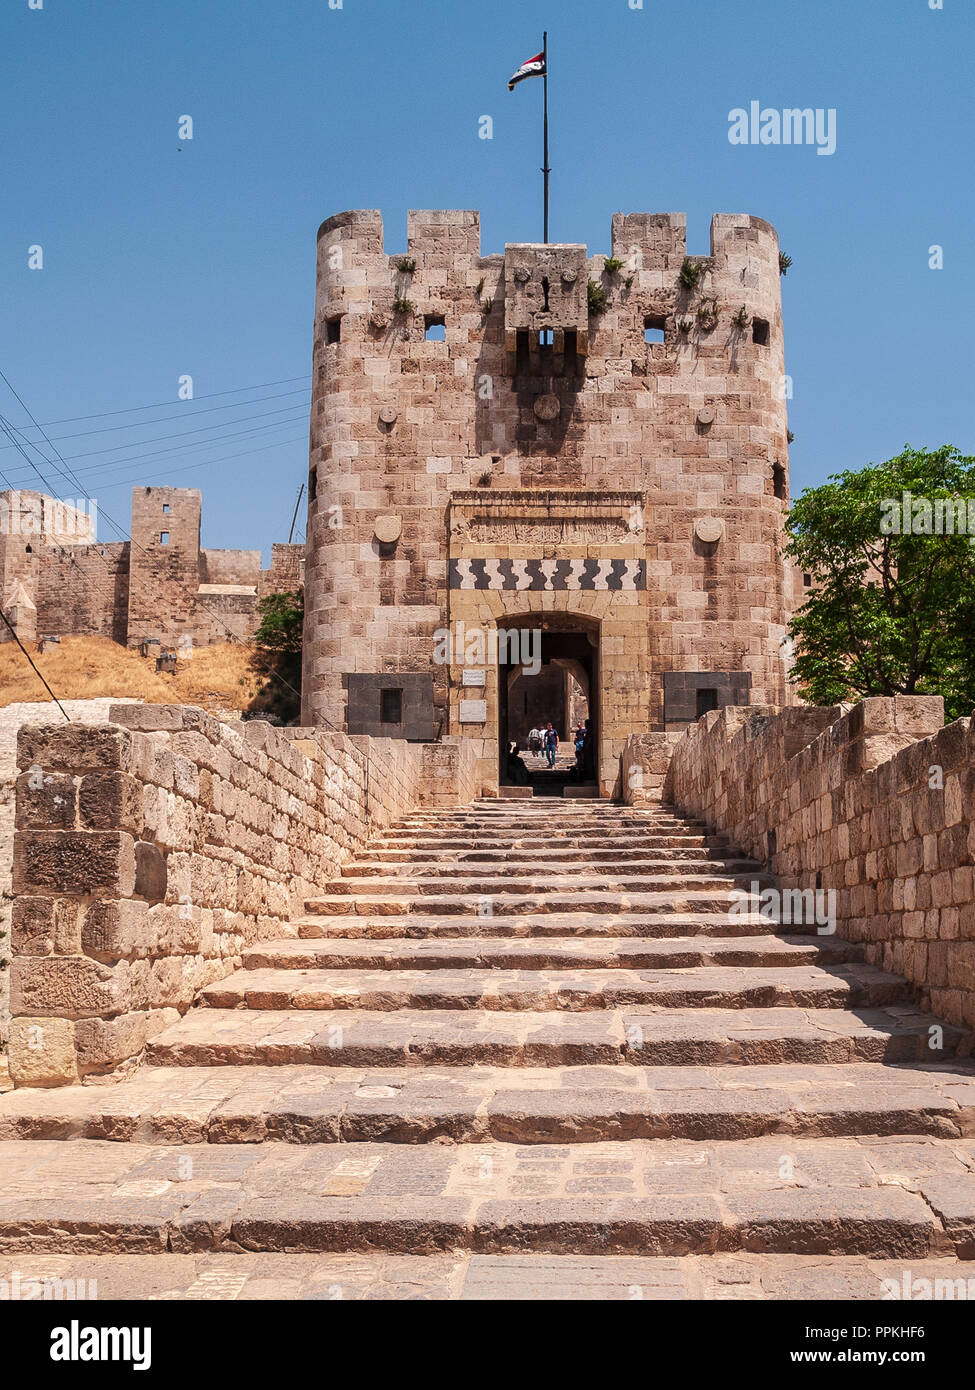 La Citadelle d'Alep - Château fort médiéval situé dans le centre de la vieille ville et l'un des plus anciens et des plus grands châteaux du monde. Alep, Syrie. Banque D'Images